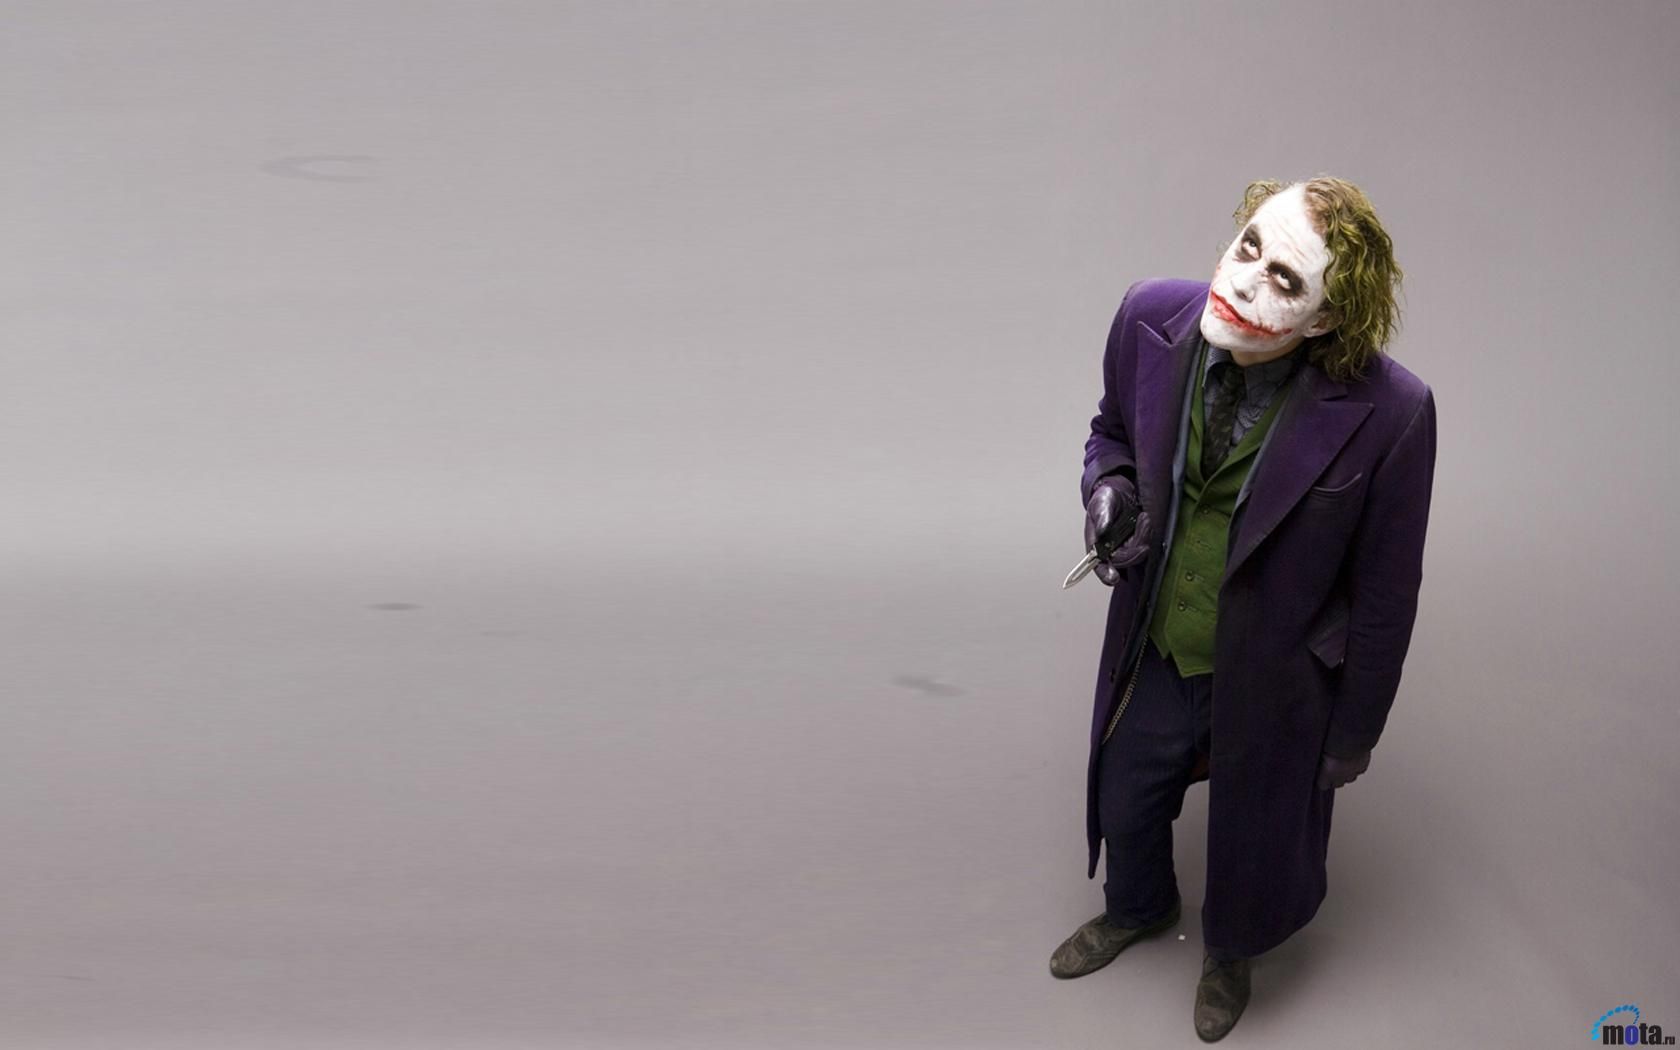 Download Wallpaper Joker The Dark Knight 1680 x 1050 widescreen